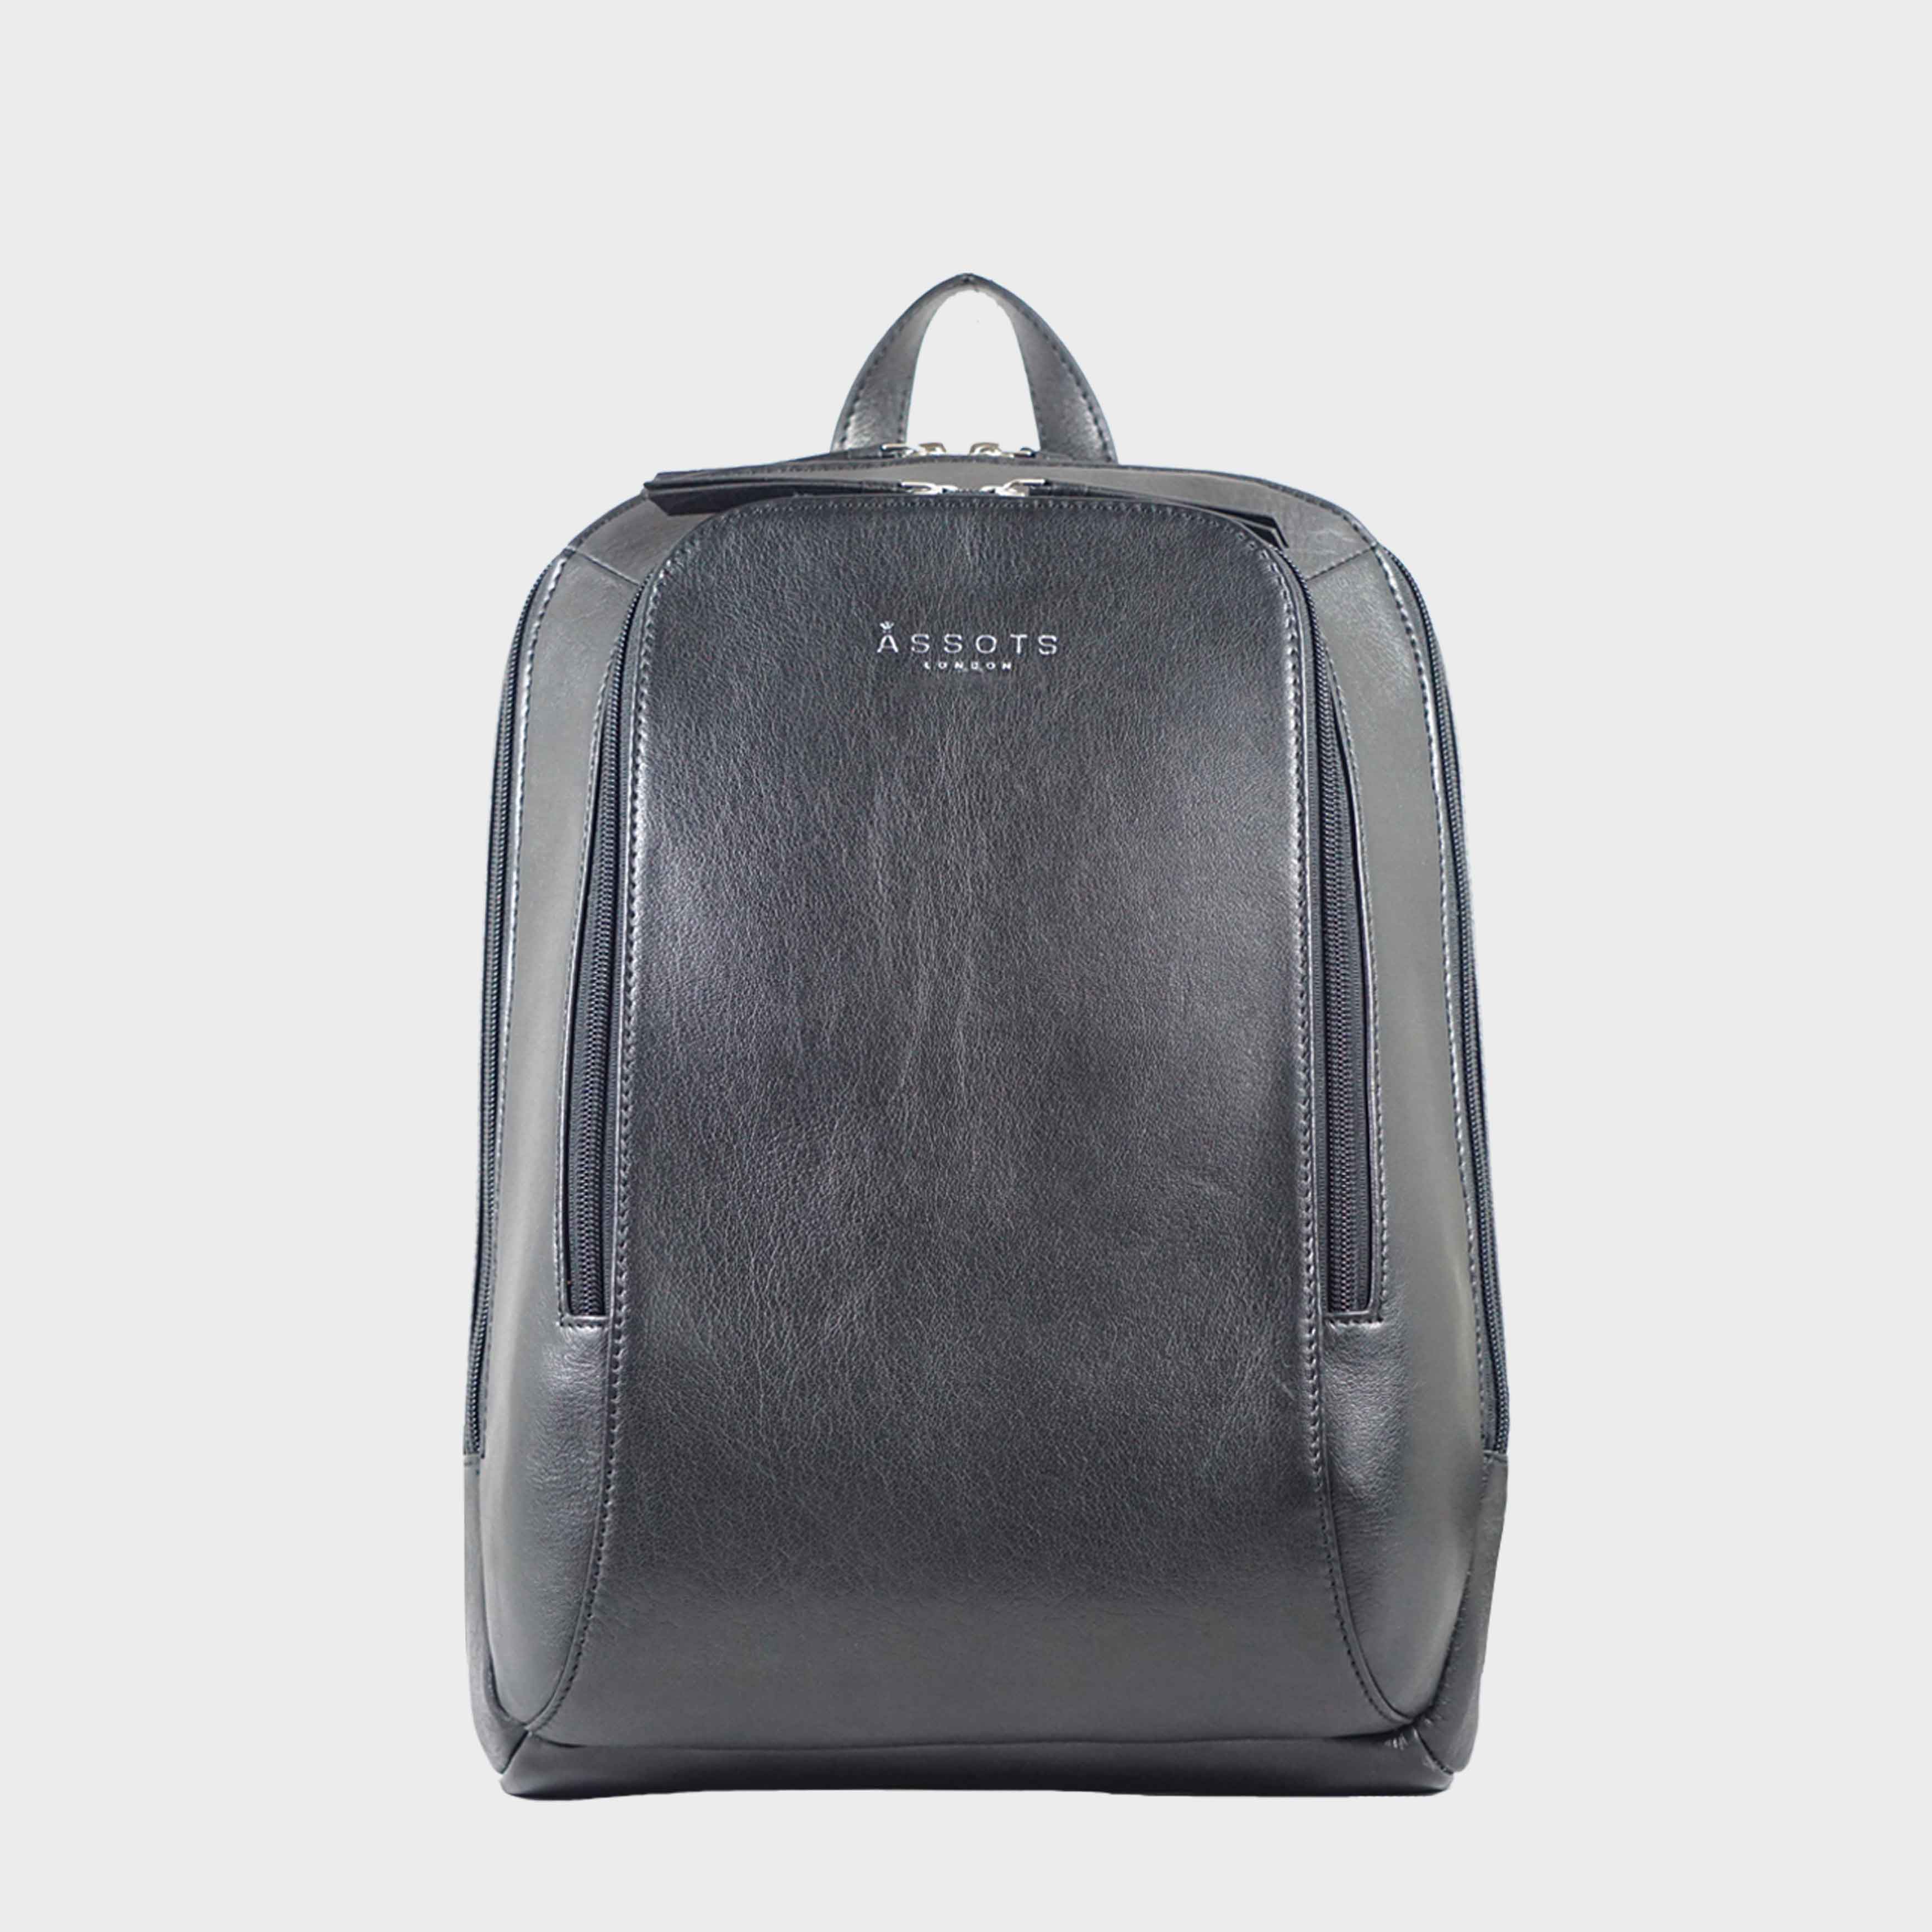 Full grain Leather Laptop Bags – Assots London